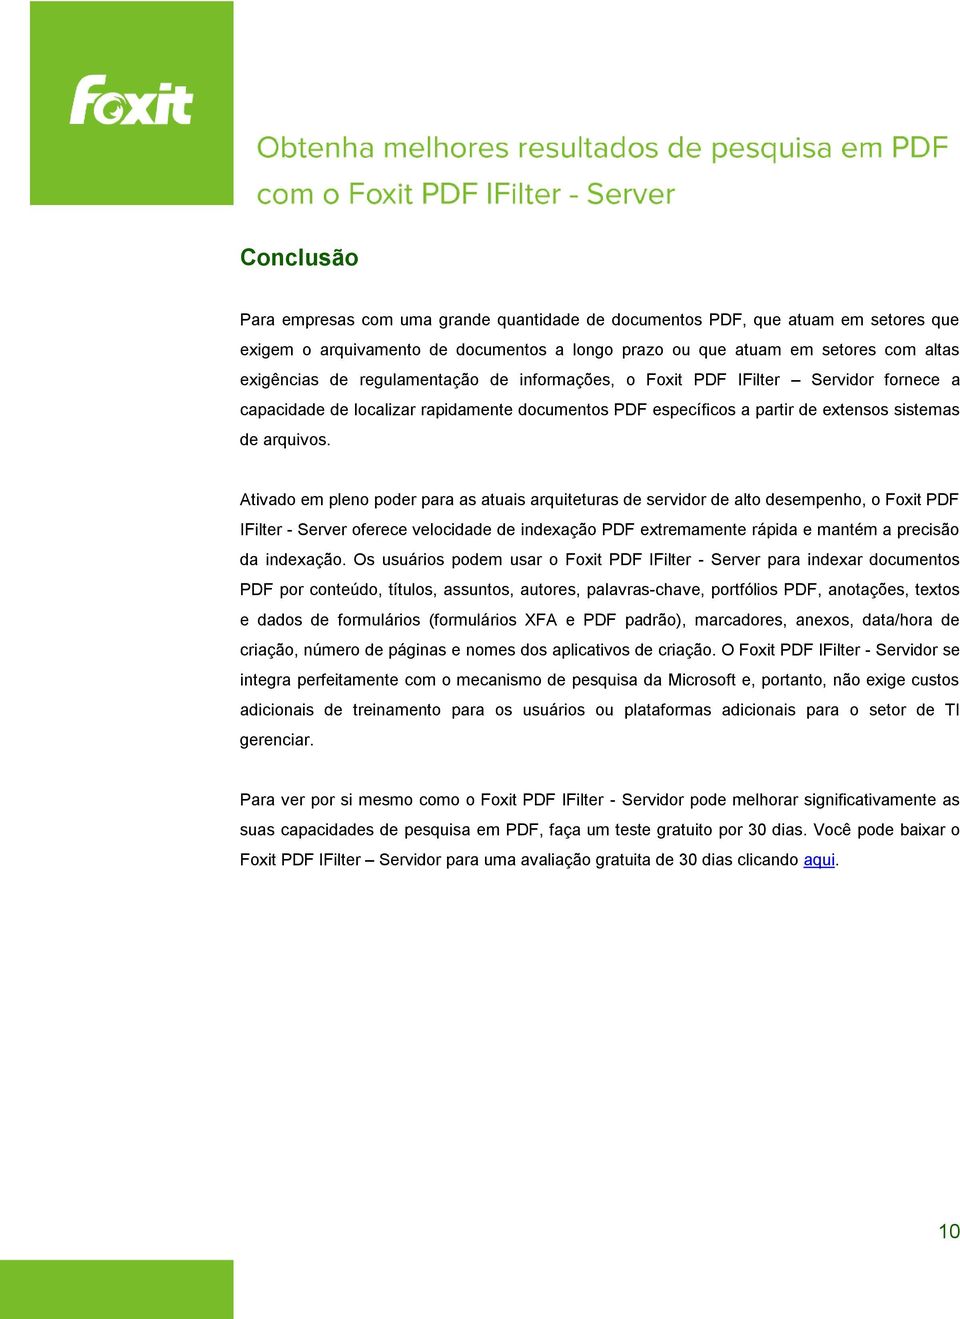 Ativado em pleno poder para as atuais arquiteturas de servidor de alto desempenho, o Foxit PDF IFilter - Server oferece velocidade de indexação PDF extremamente rápida e mantém a precisão da